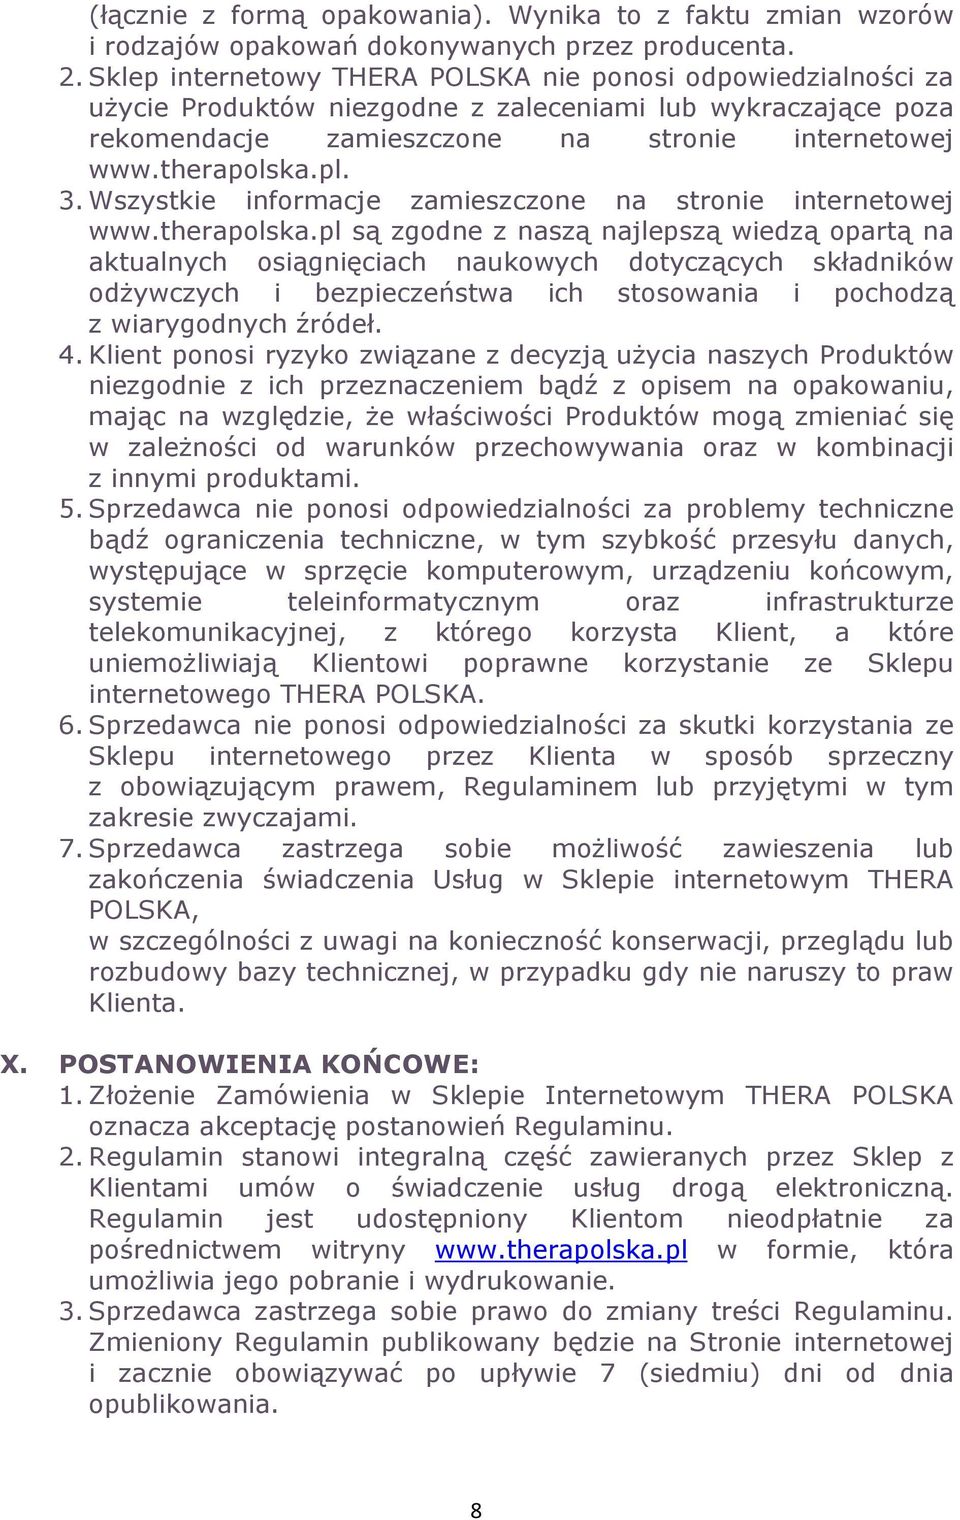 Wszystkie informacje zamieszczone na stronie internetowej www.therapolska.